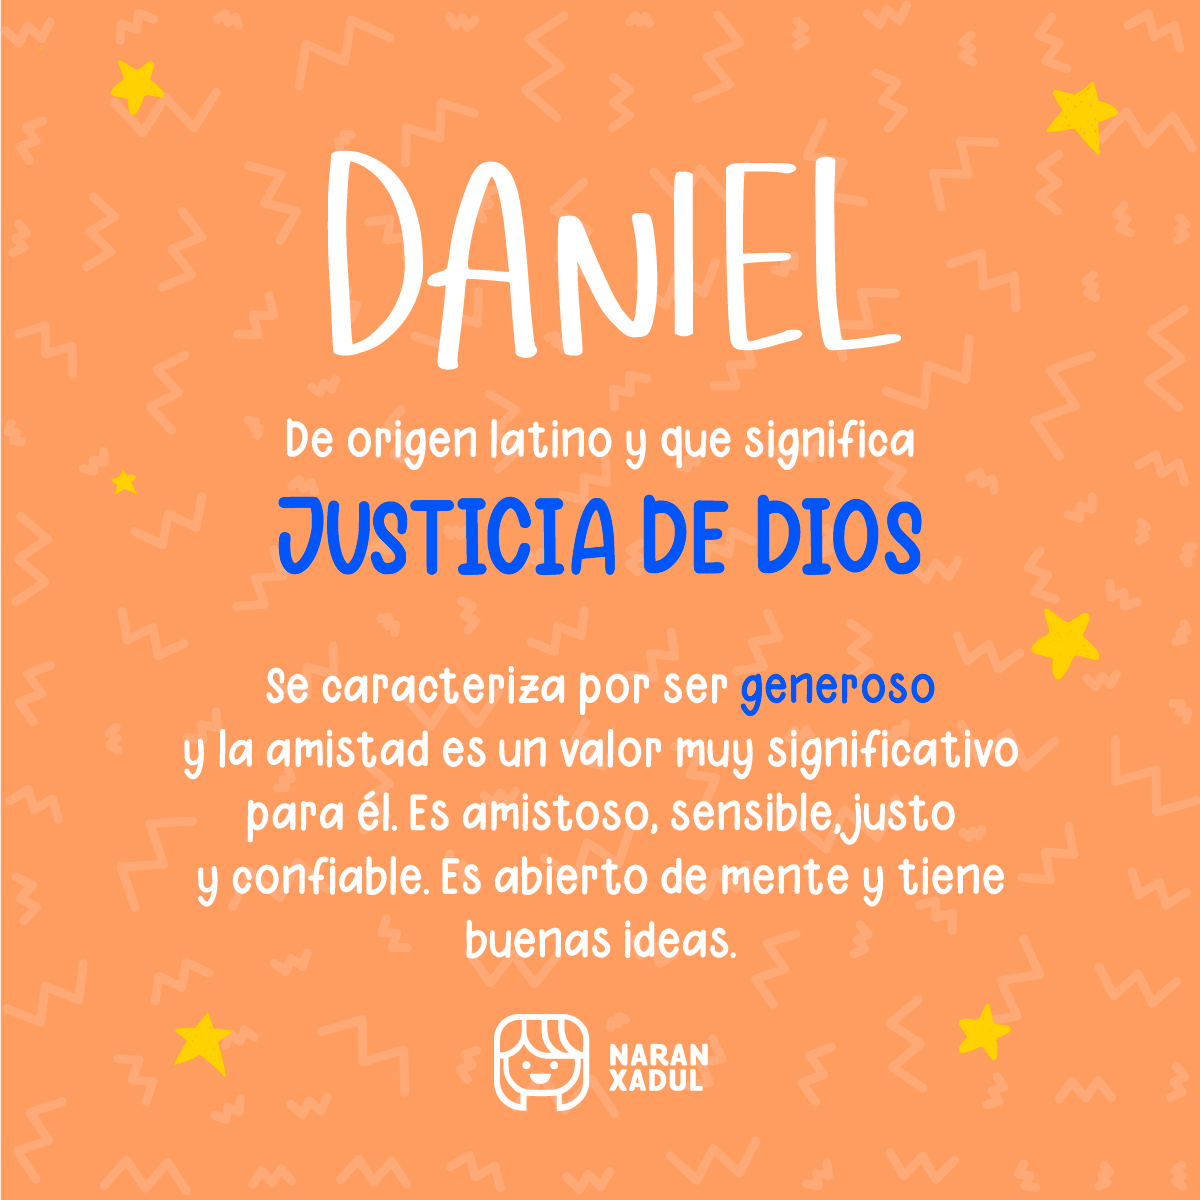 Significado de Daniel